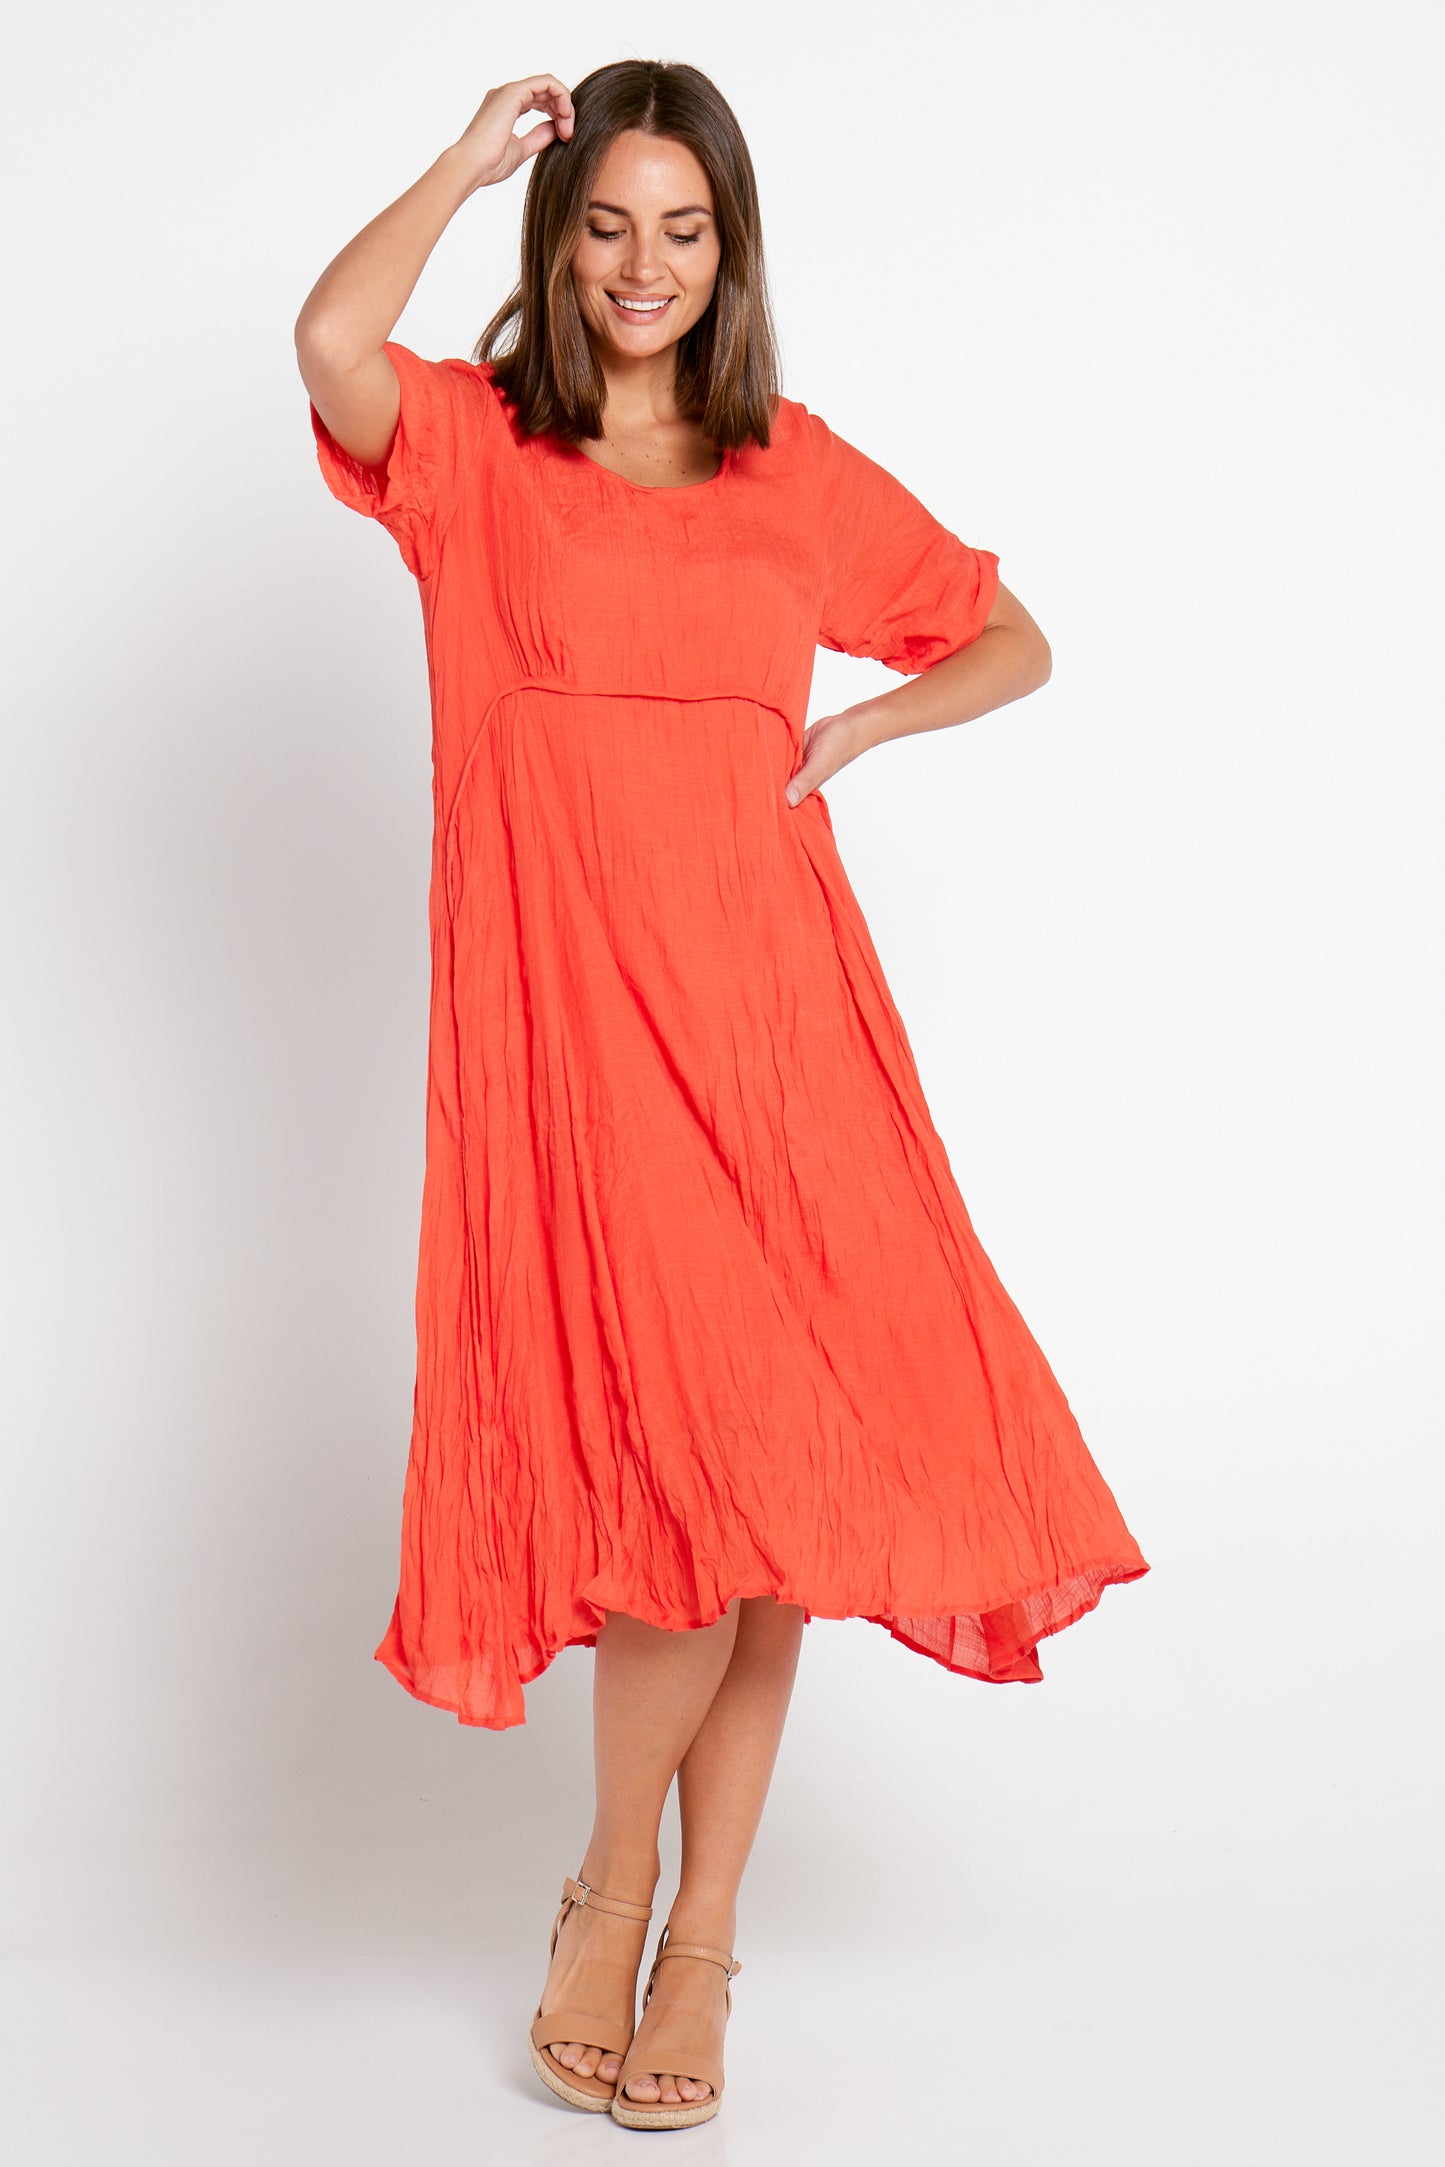 Waterhouse Dress - Orange